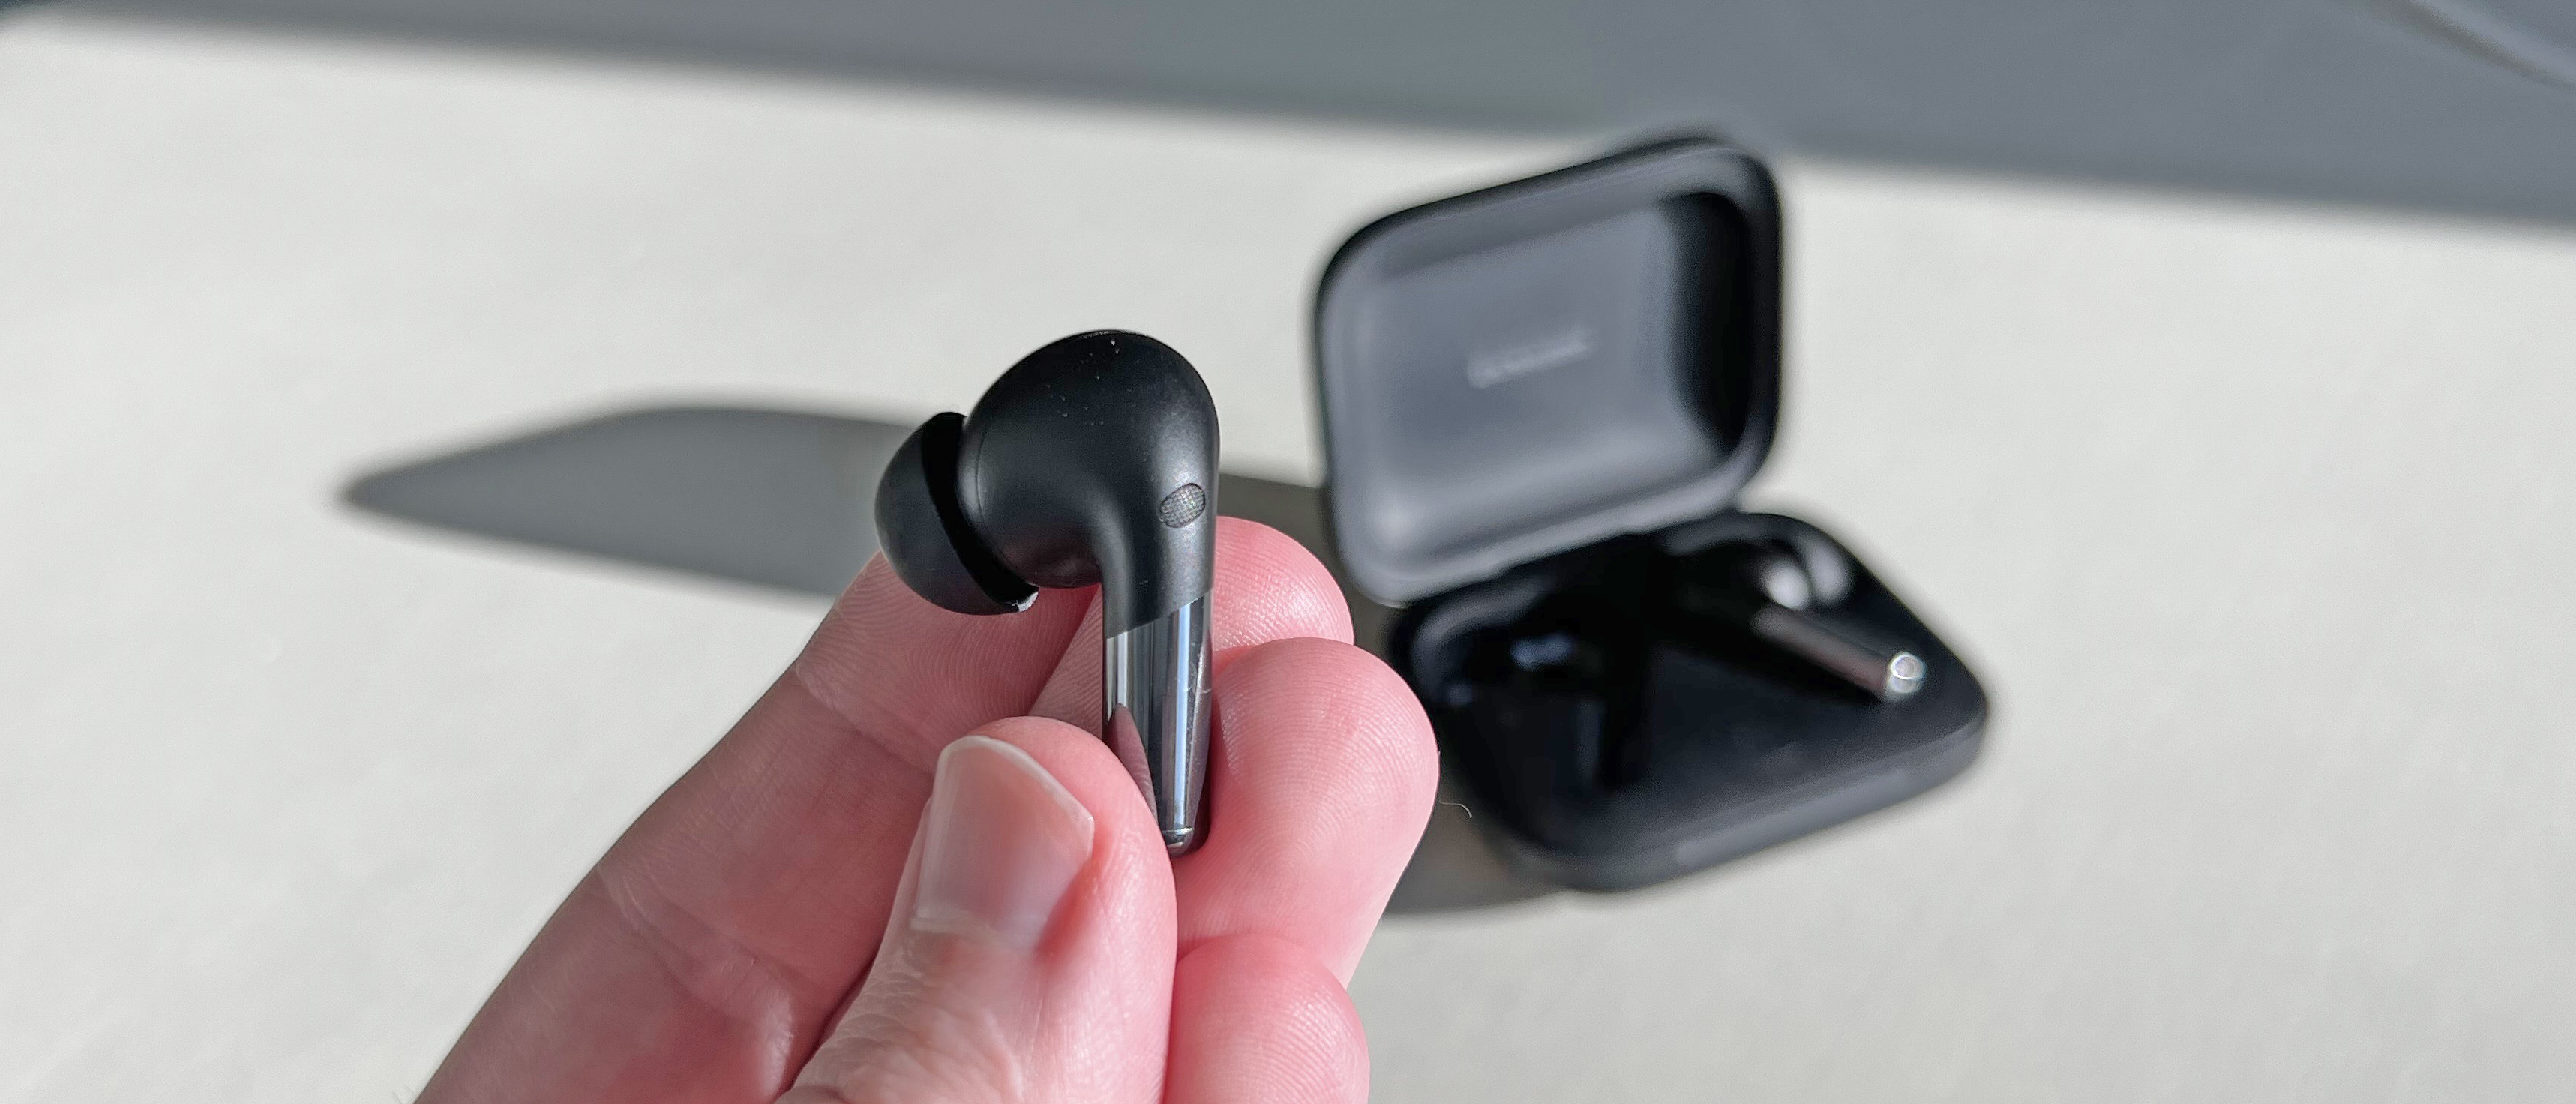 Estos auriculares Bluetooth con ANC de Anker son una alternativa más barata  a los AirPods y ahora están de oferta a precio mínimo